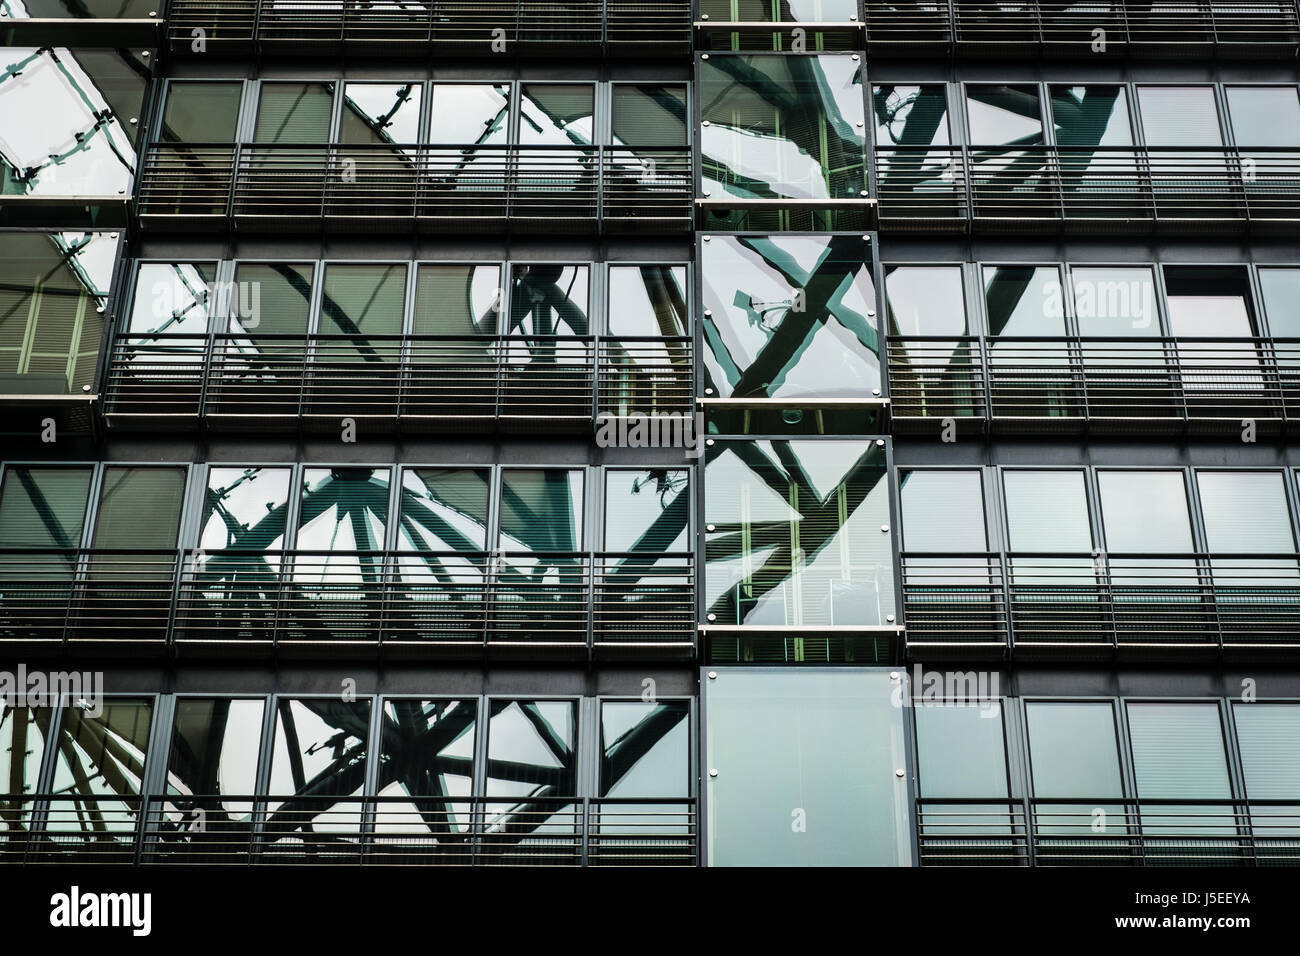 Berlino, Germania - 16 maggio 2017: moderno edificio bffice dettaglio del Sony Center di Potsdamer Platz a Berlino, Germania Foto Stock